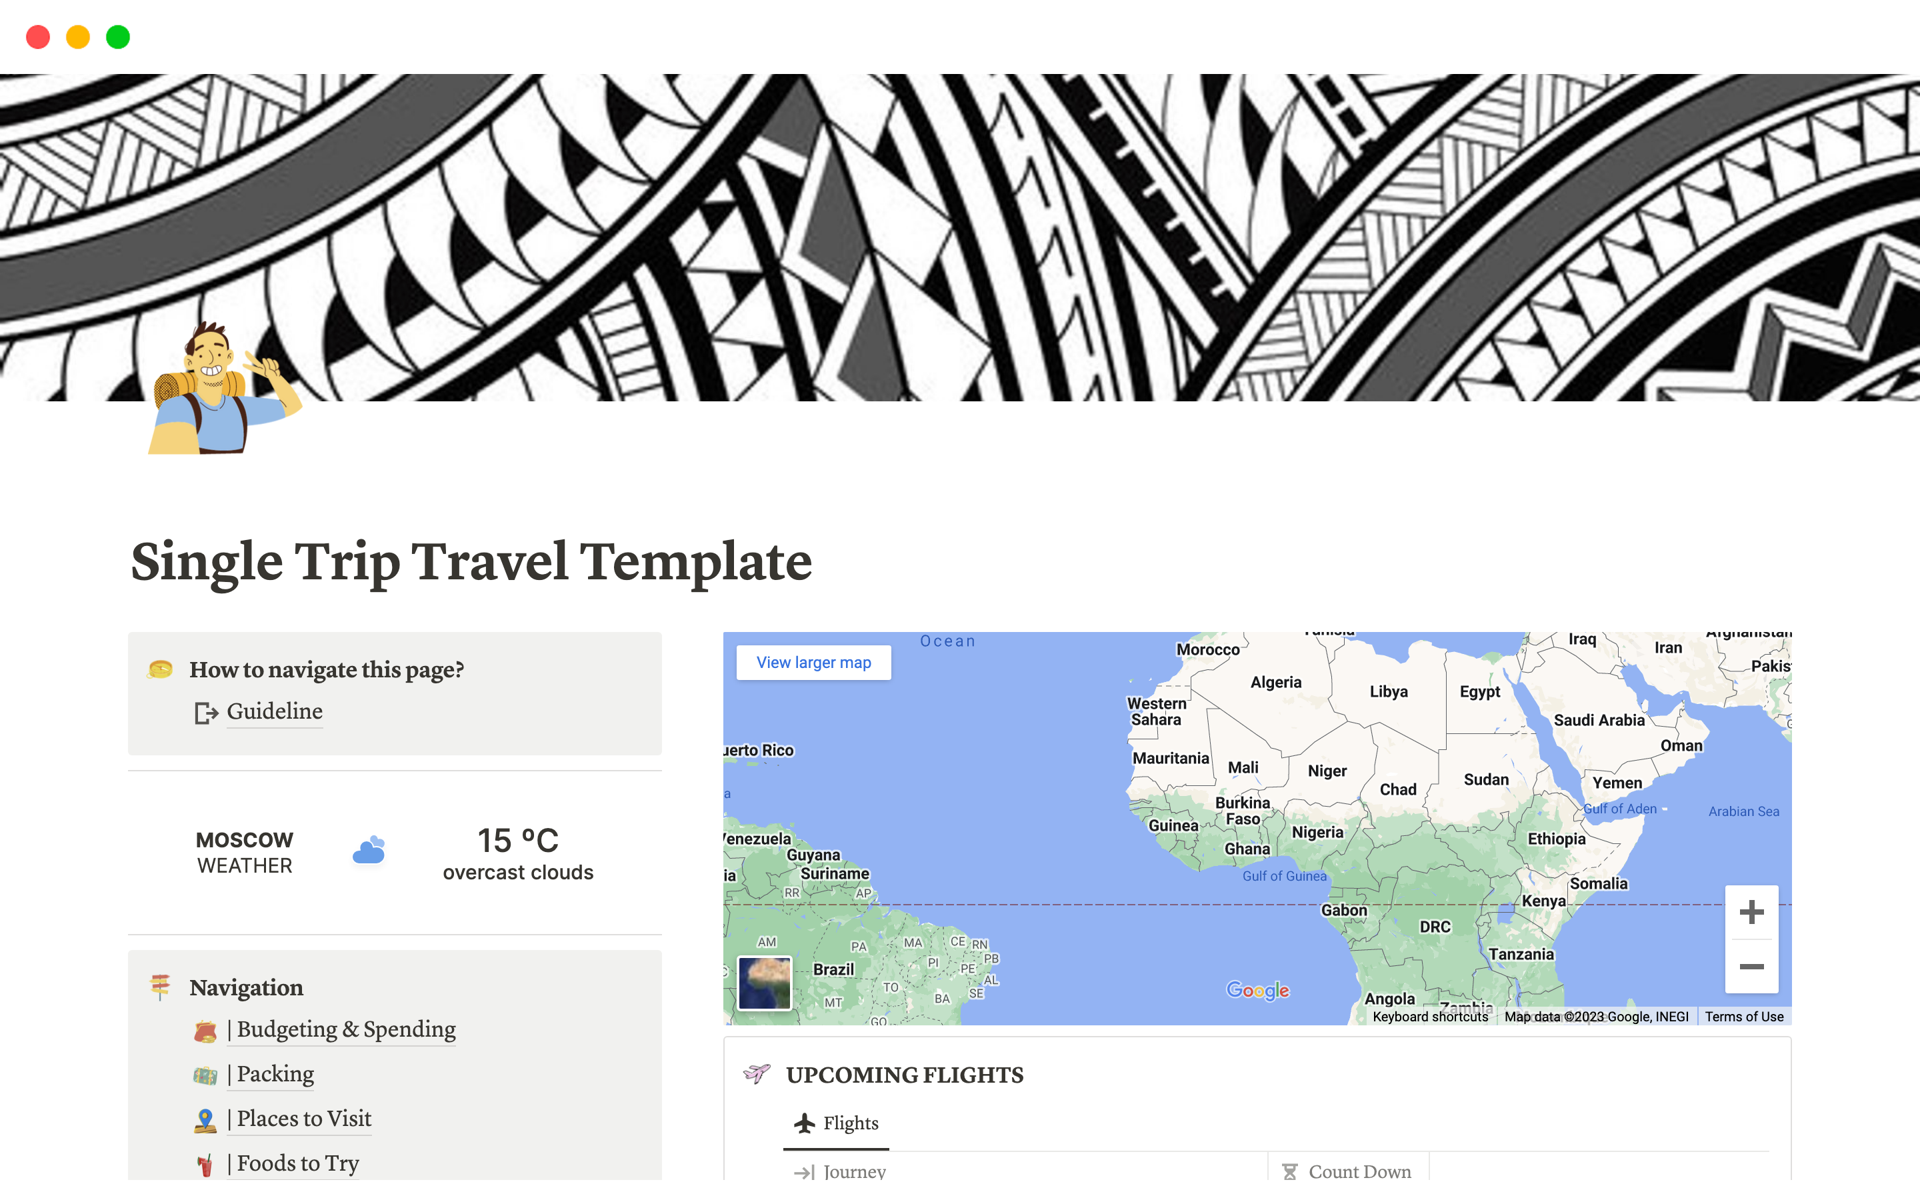 Uma prévia do modelo para Travel Template : Planner for Single Trip Journey